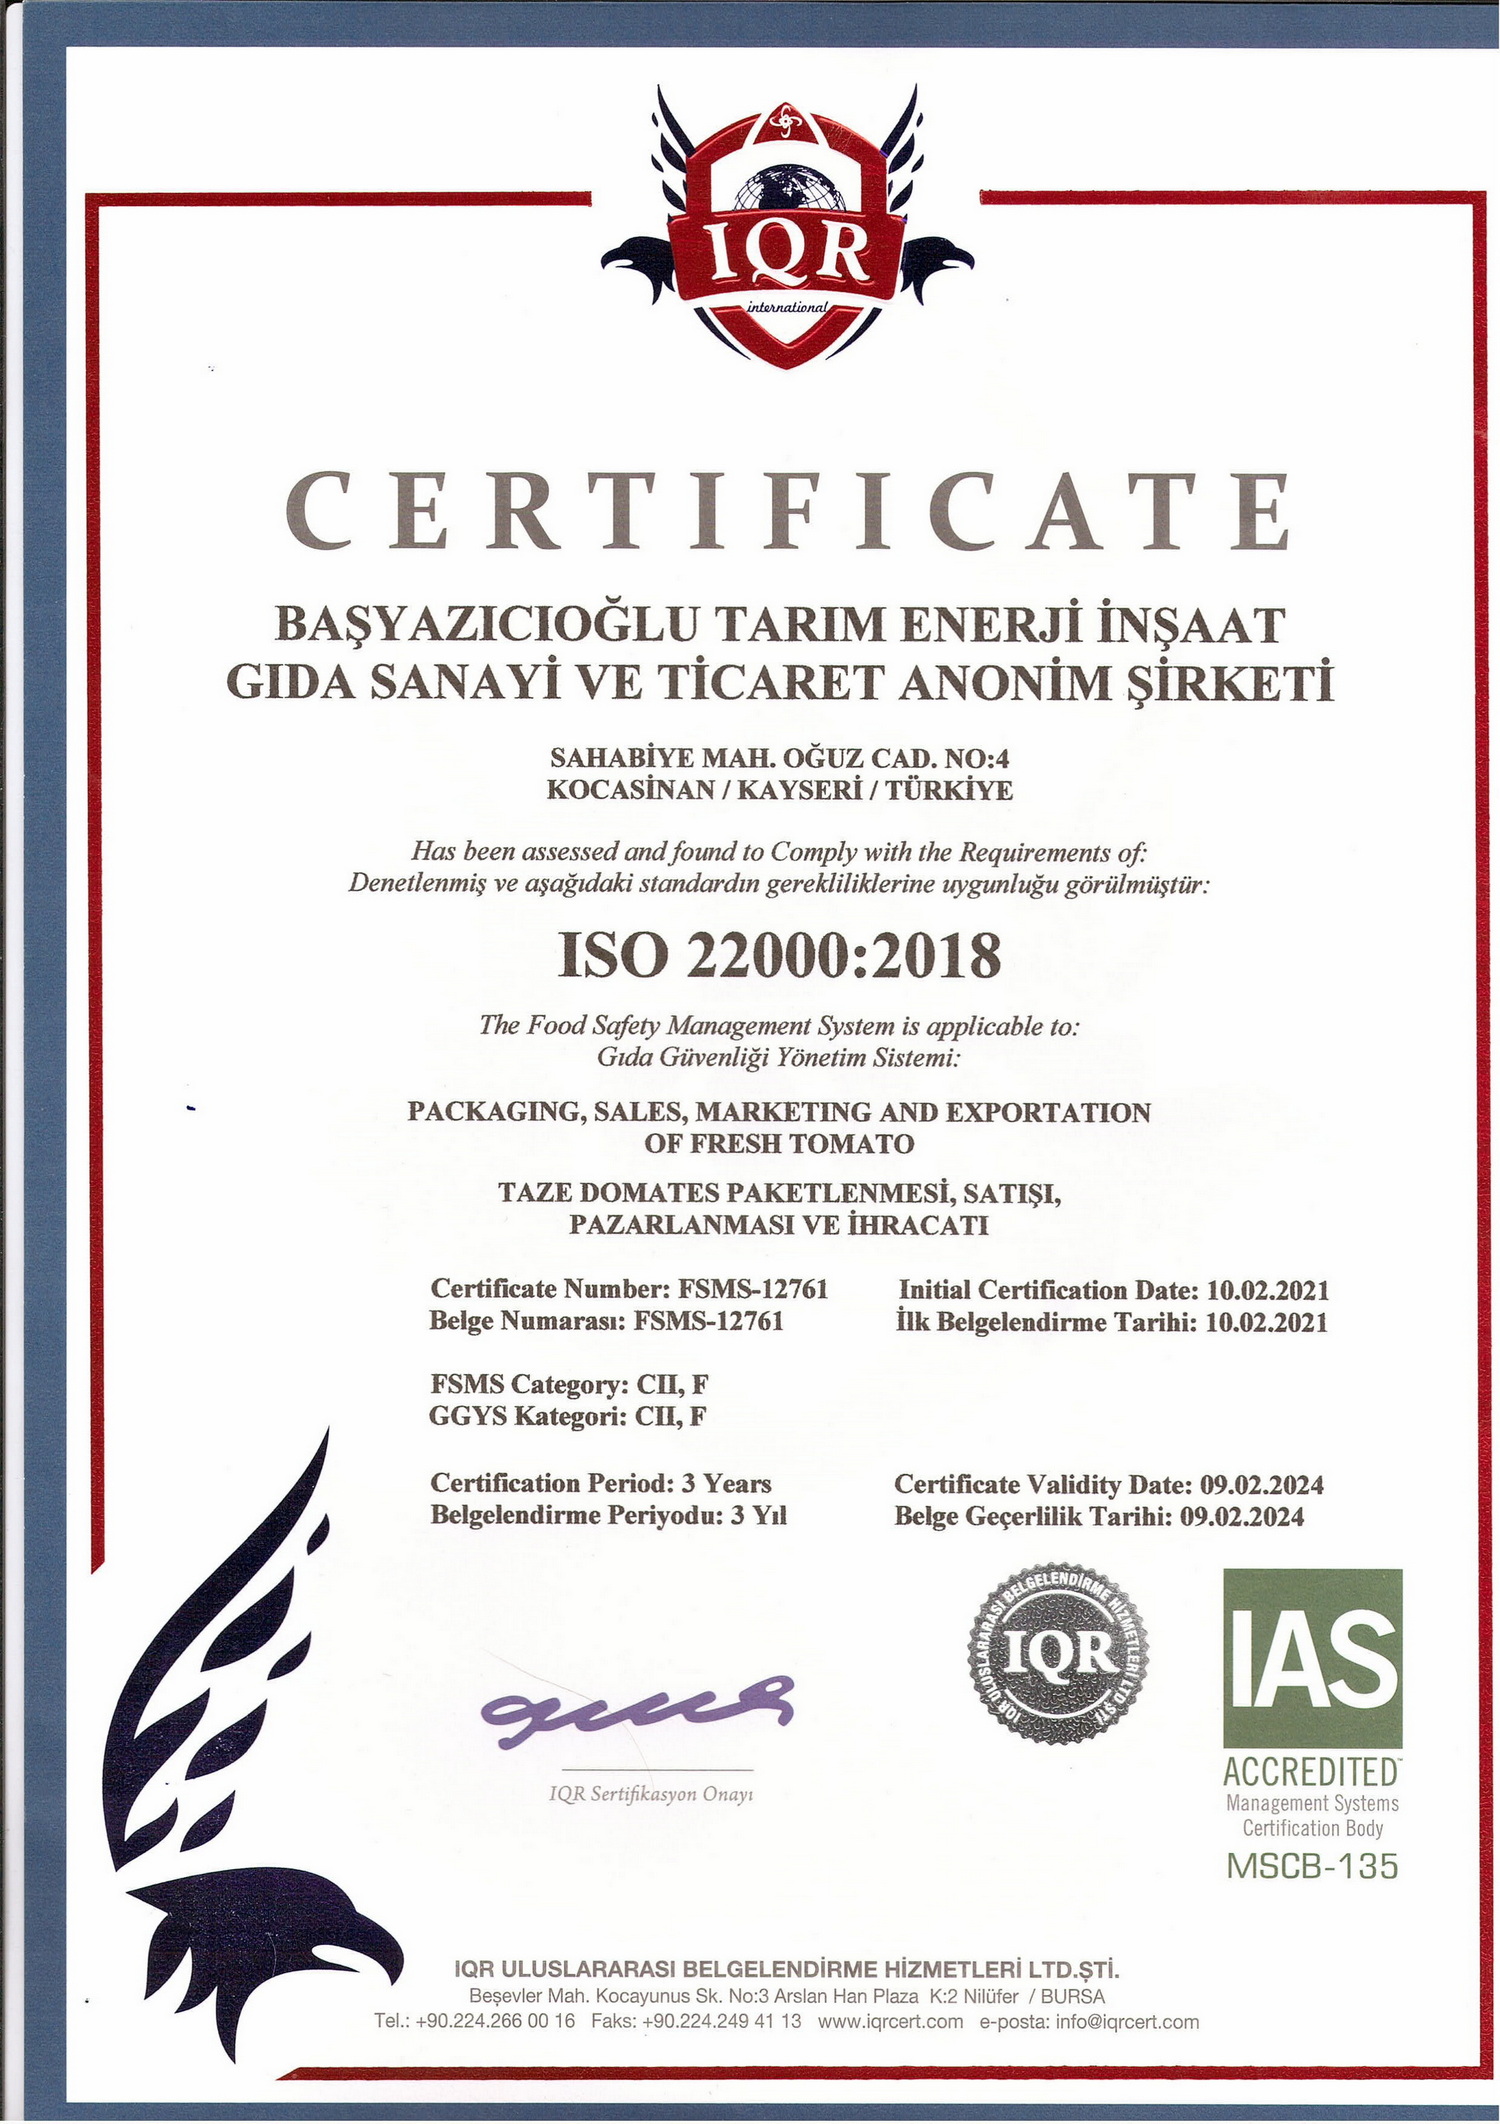 ISO 22000_2018_Belge Geçerlilik Tarihi_09.02.2024.jpg